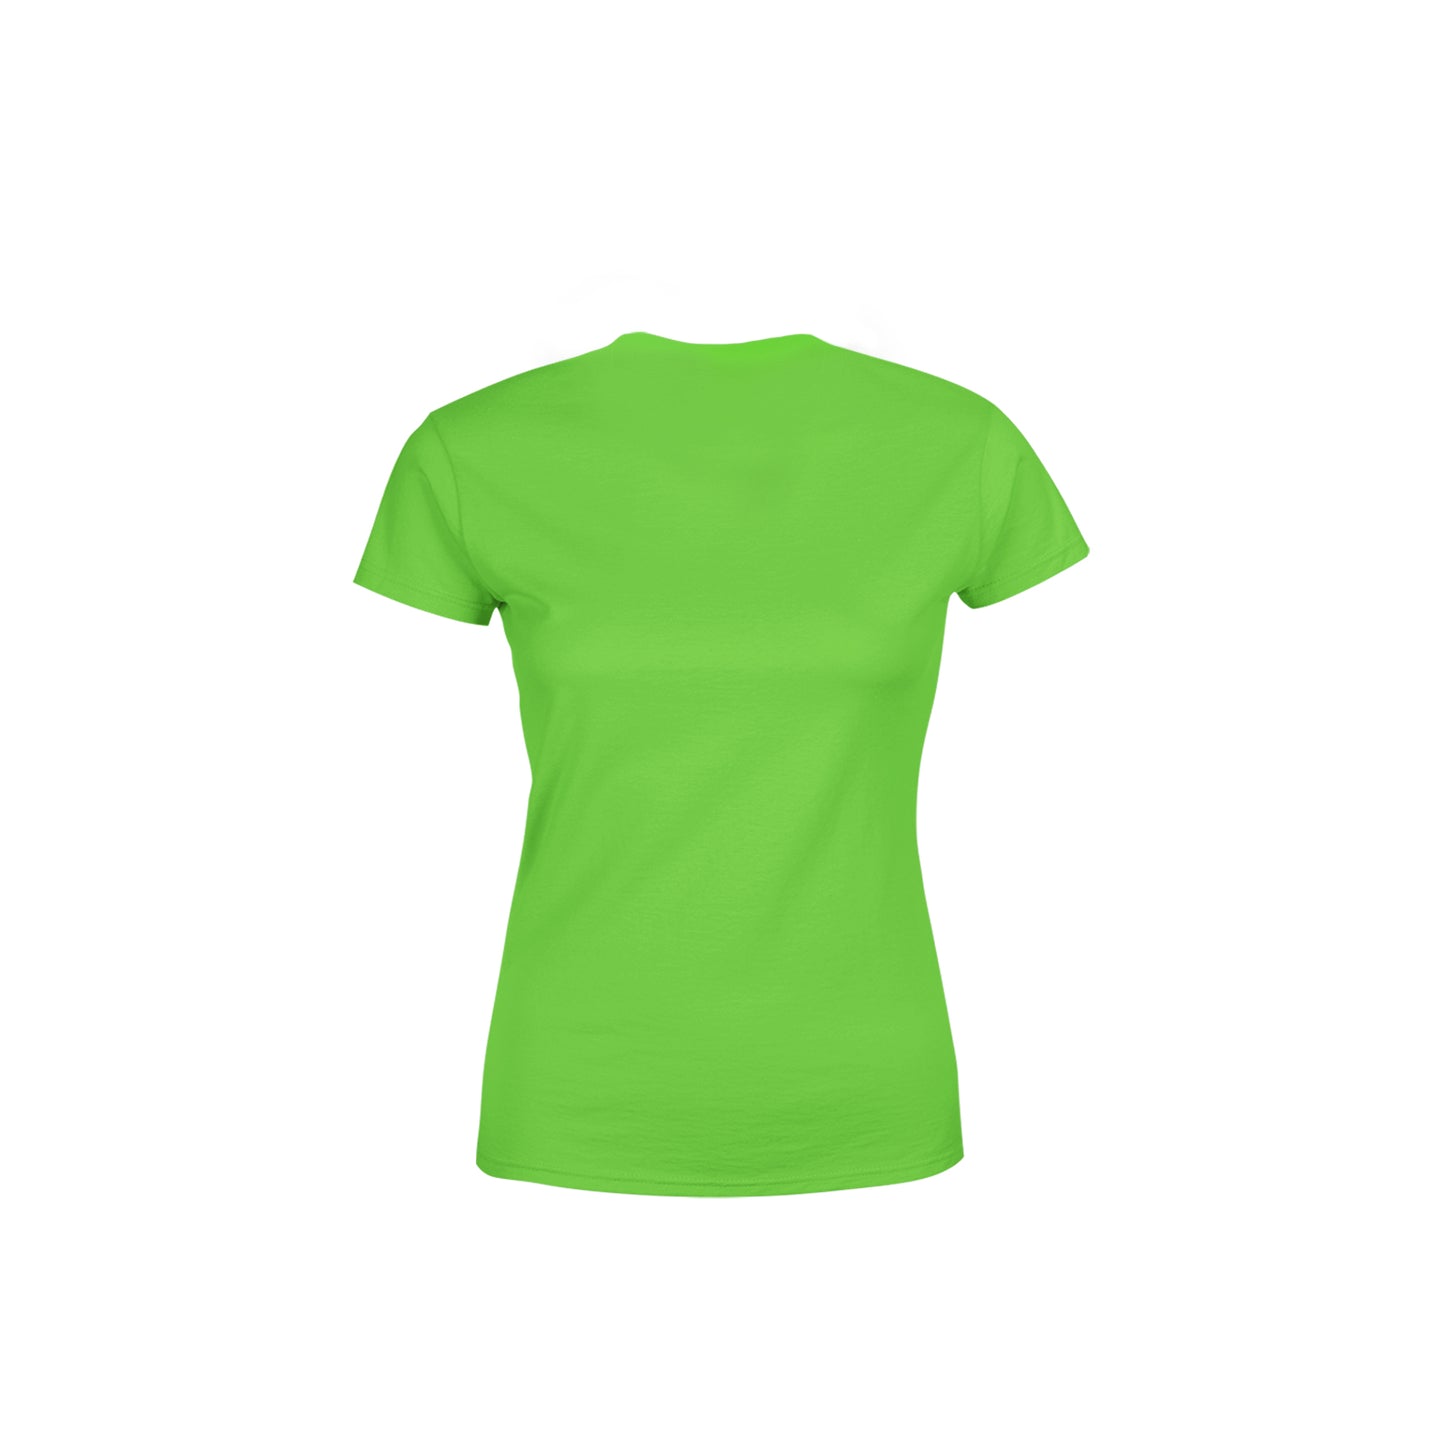 43 Number Women's T-Shirt (Liril Green)